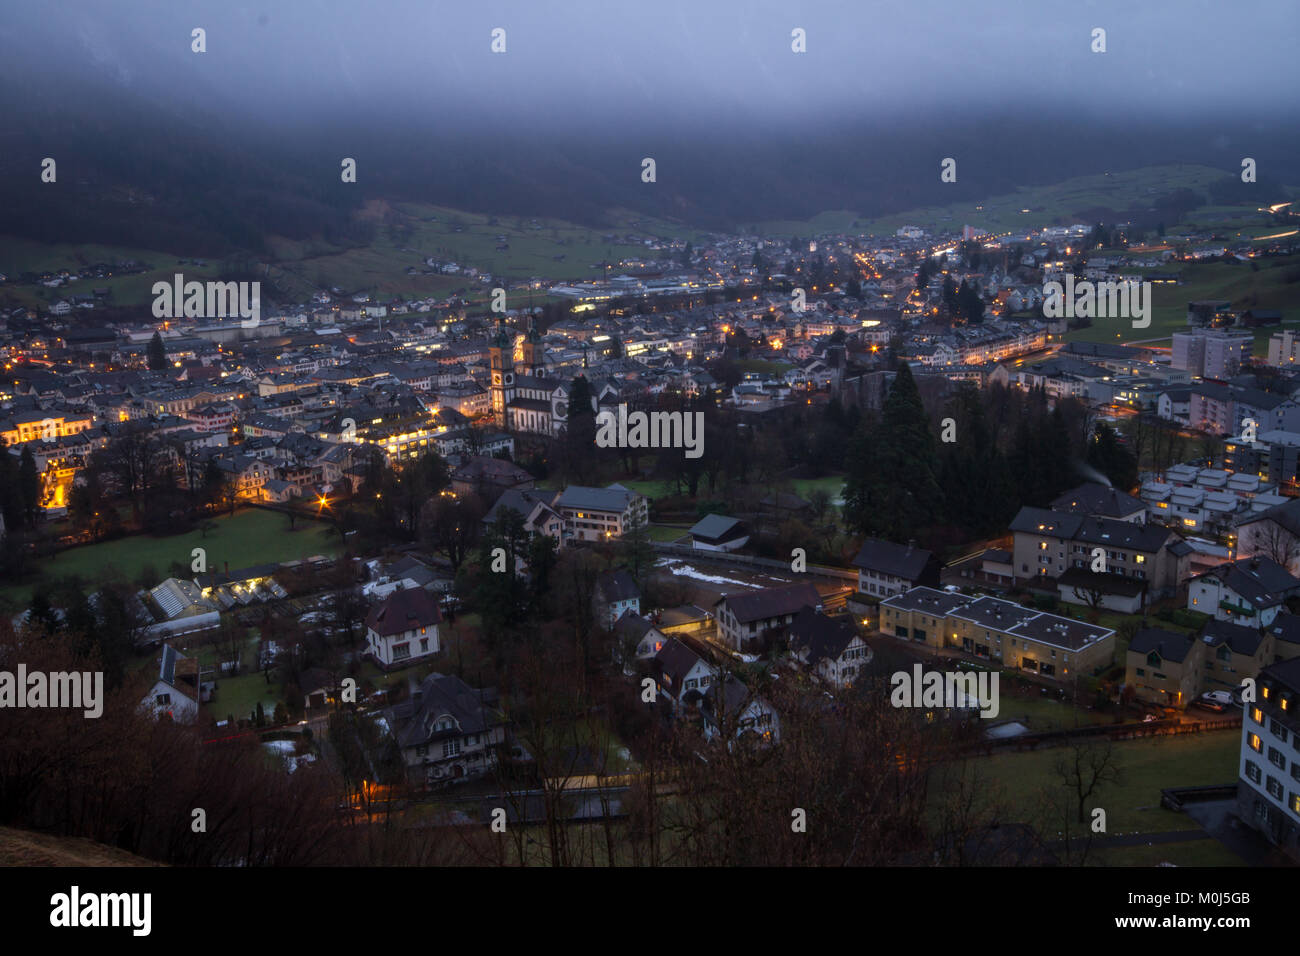 Switzerland, Glarus by night Stock Photo